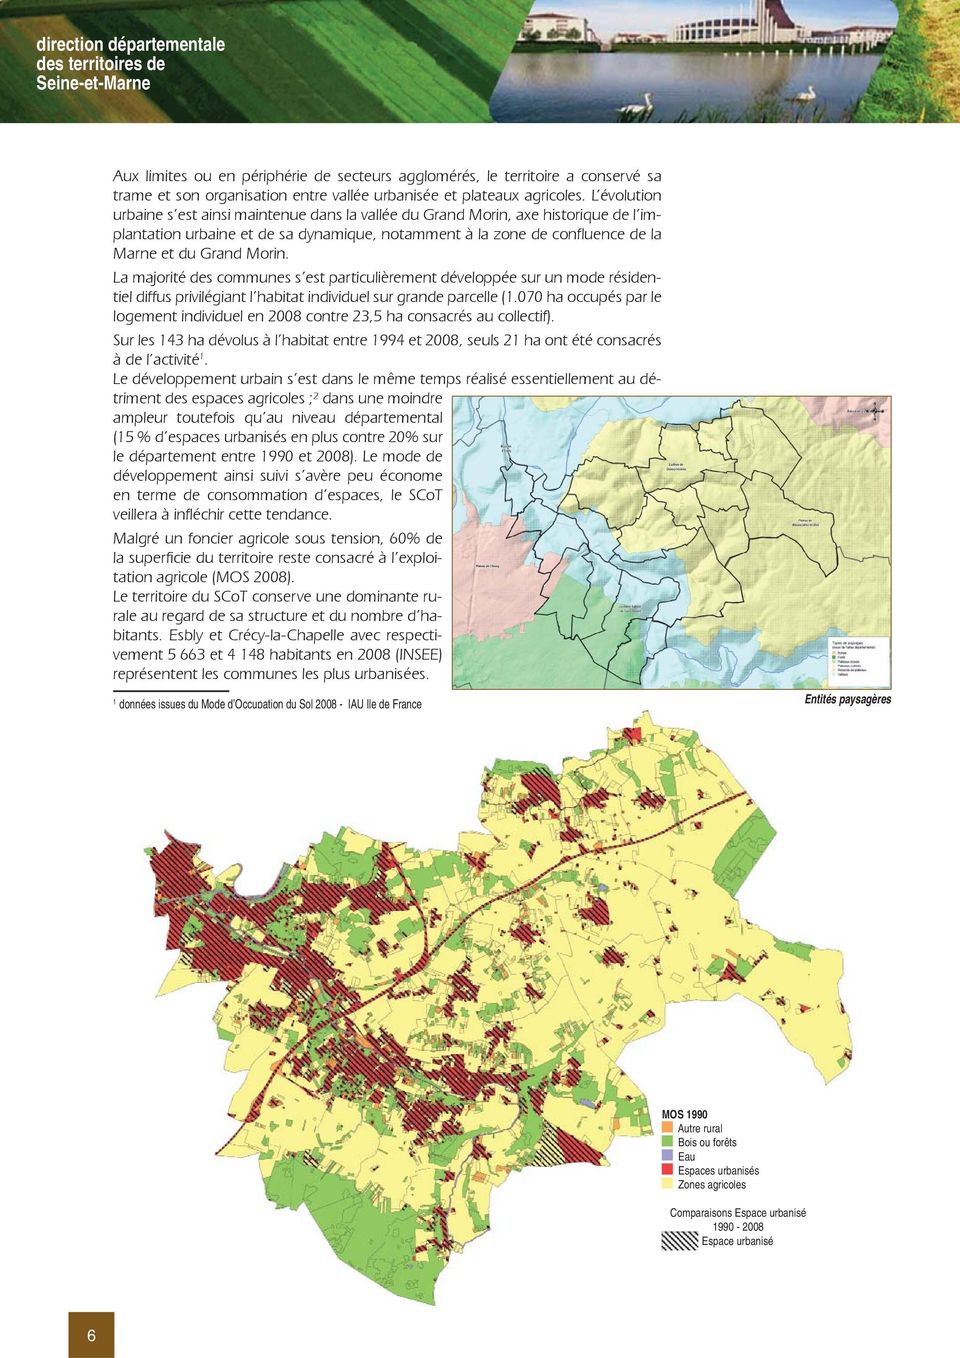 L évolution urbaine s est ainsi maintenue dans la vallée du Grand Morin, axe historique de l implantation urbaine et de sa dynamique, notamment à la zone de confluence de la Marne et du Grand Morin.